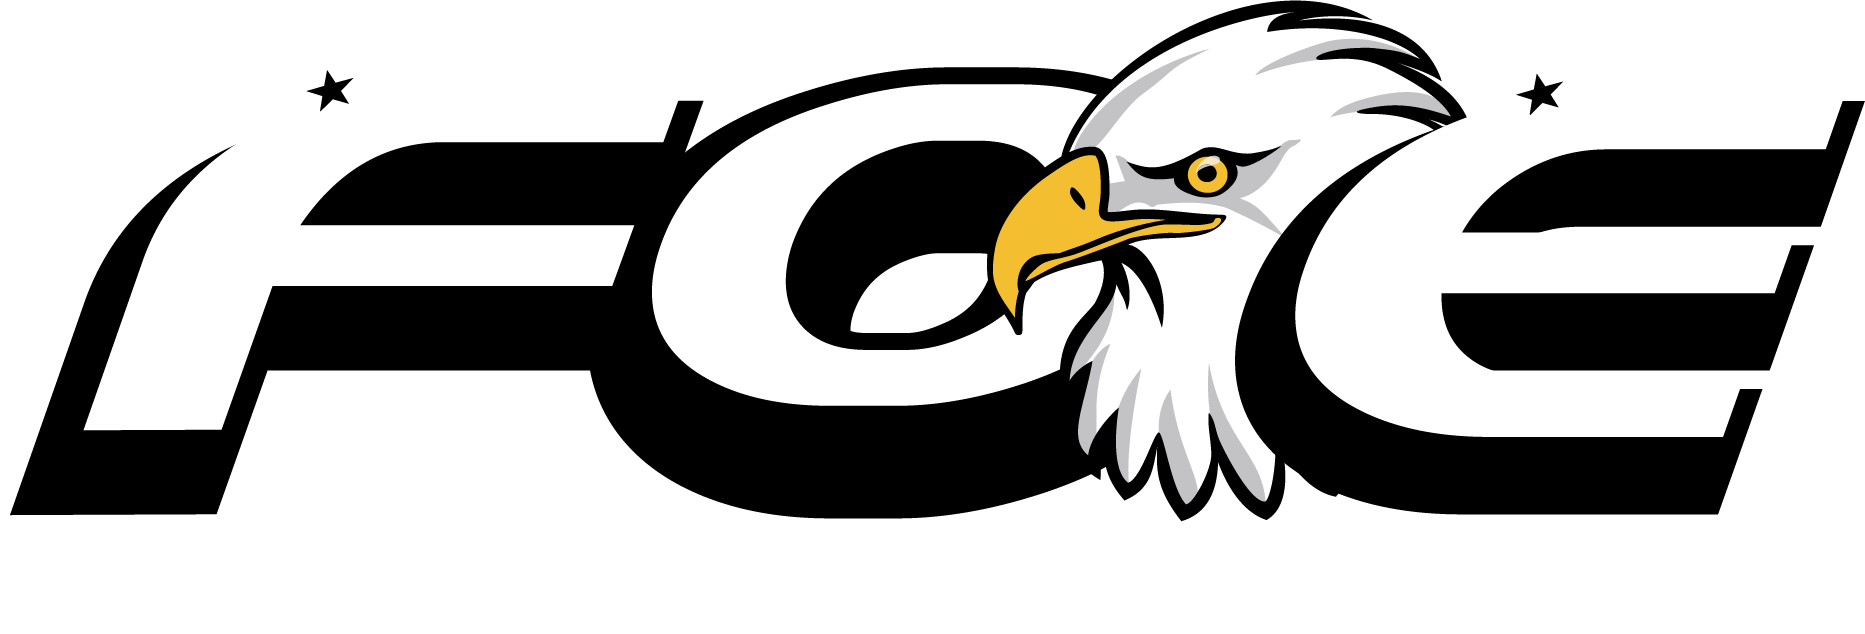 Fraternal Order Of Eagles - Fraternal Order Of Eagles Background.